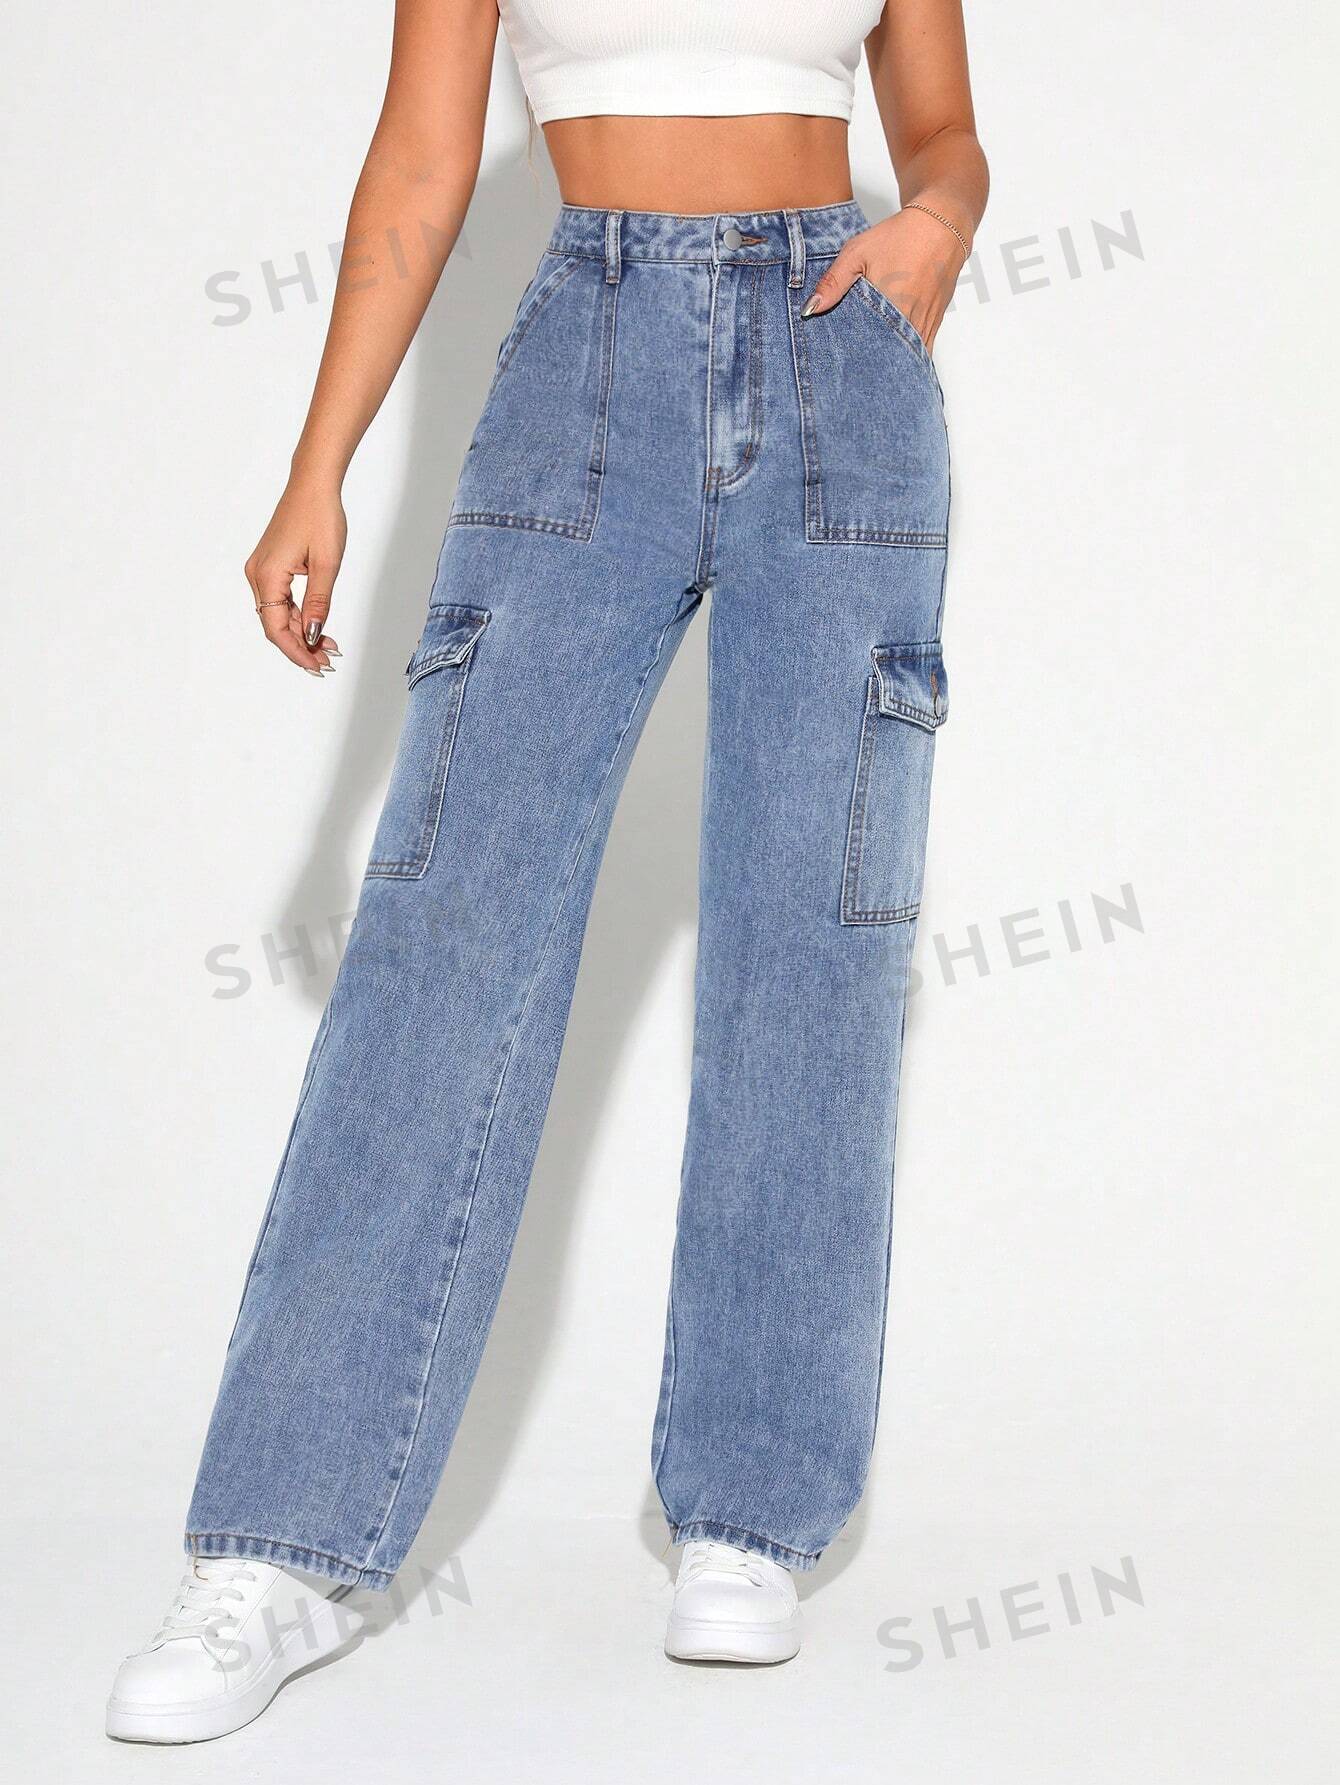 SHEIN Высокие женские джинсовые брюки карго из стираного материала, средняя стирка фото